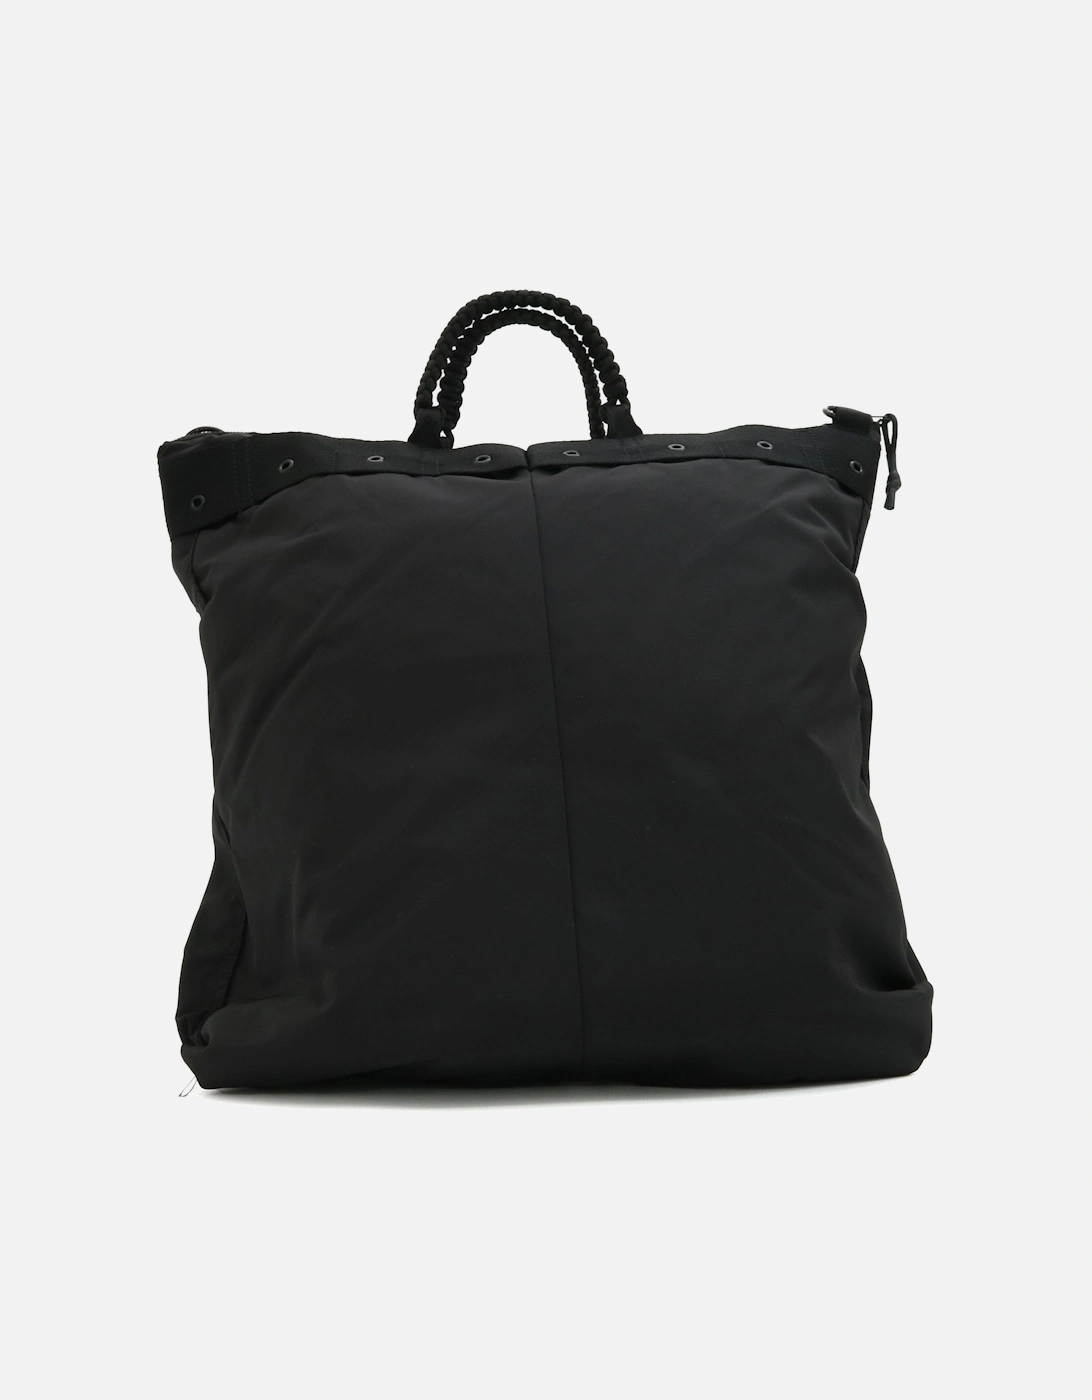 Mallce Day Carry Nylon Black Bag